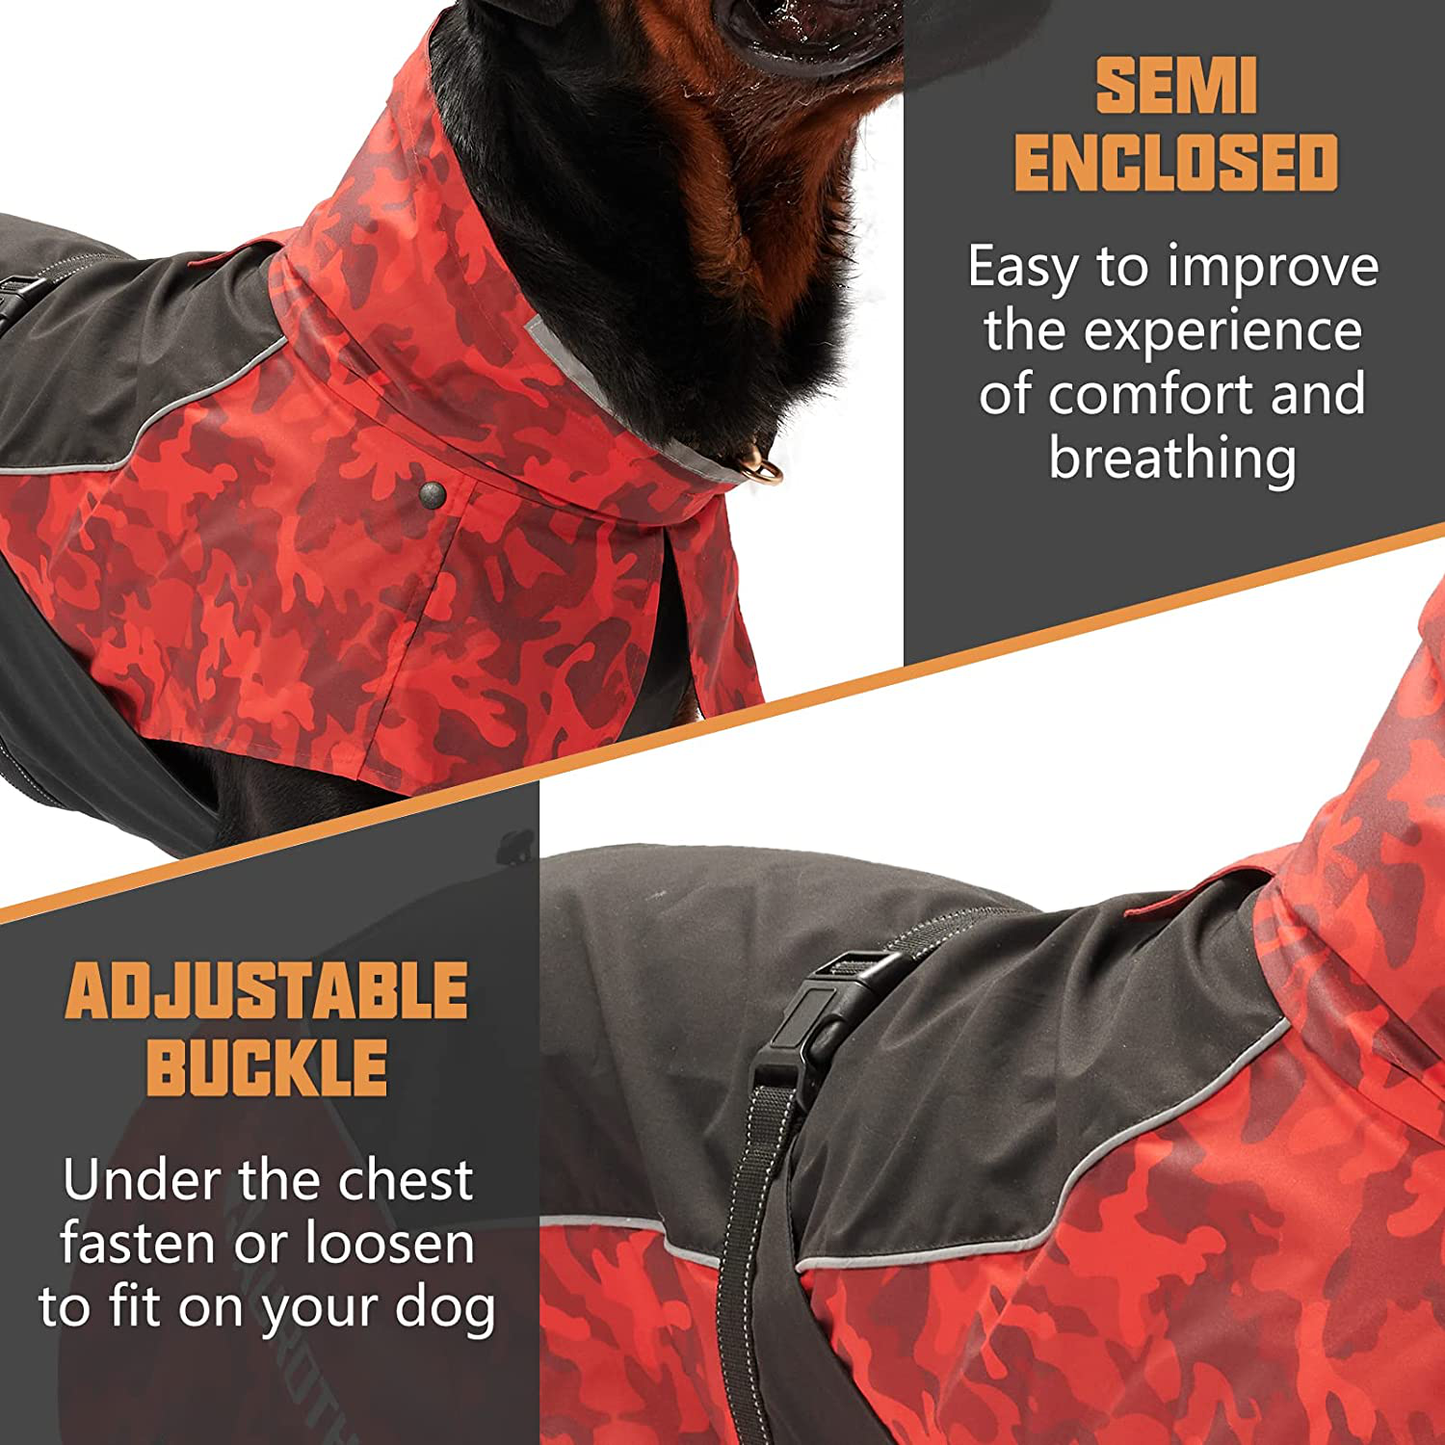 Auroth Dog Jacket Outdoor, Waterproof Dog Raincoat for Large Medium Dogs, Reflective Dog Rain Jacket with Adjustable Elastic Rope and Leash Hole